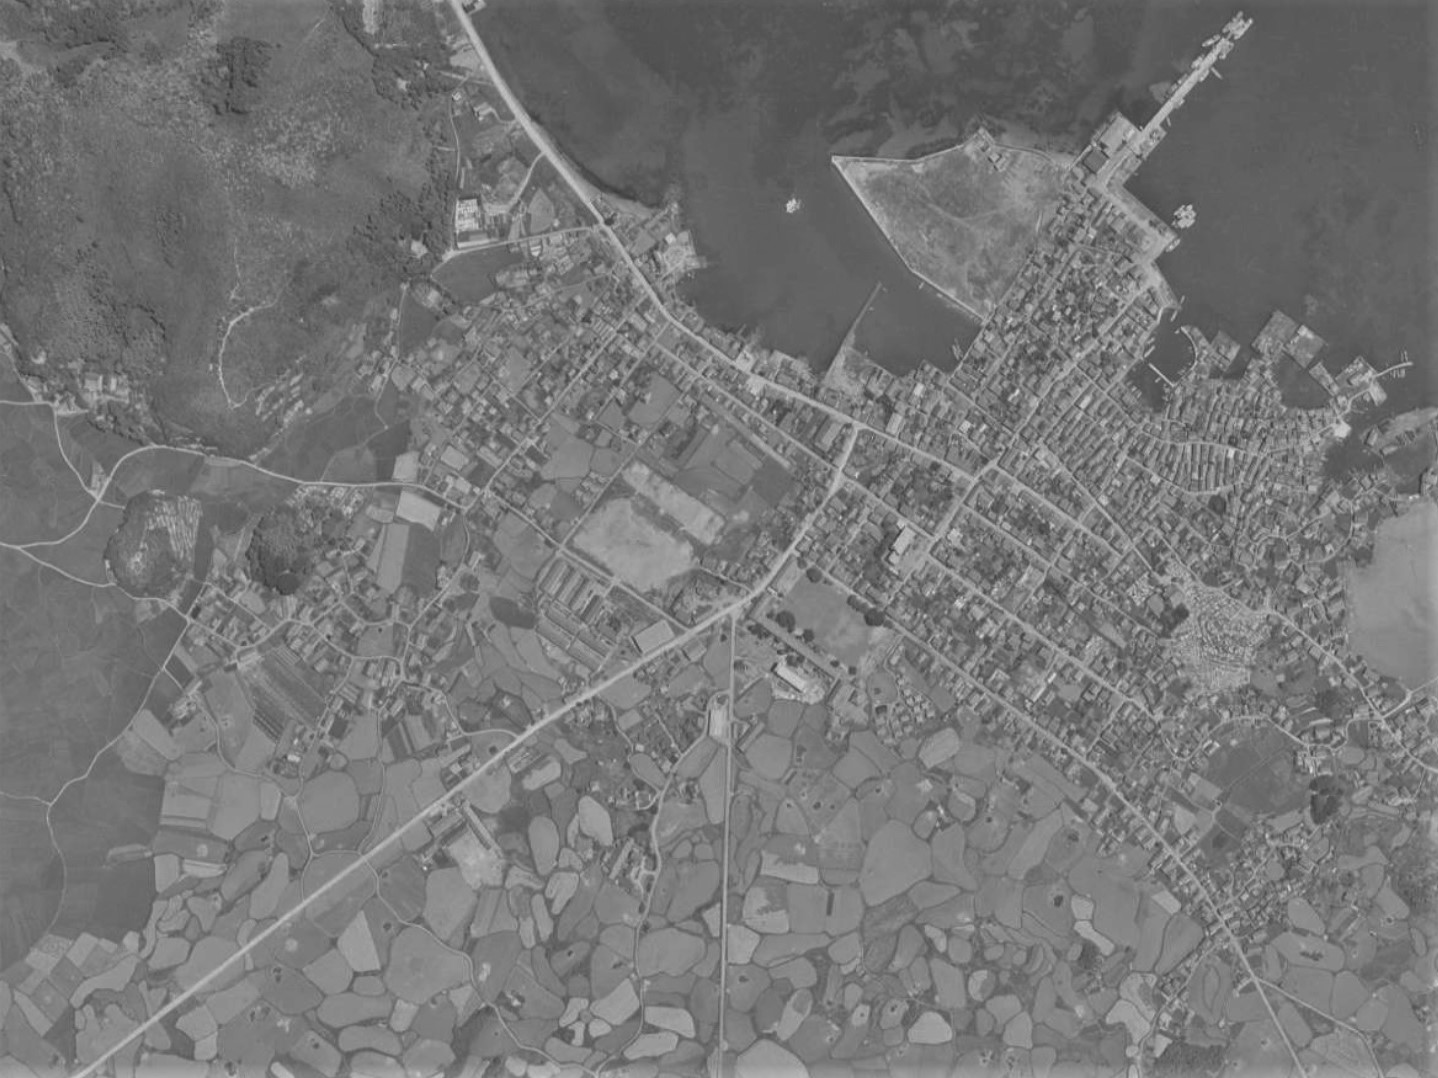 富江陣屋跡と城下町、昭和40年撮影空中写真（国土地理院Webサイトより、MKU652X-C23-10〔部分〕）の画像。